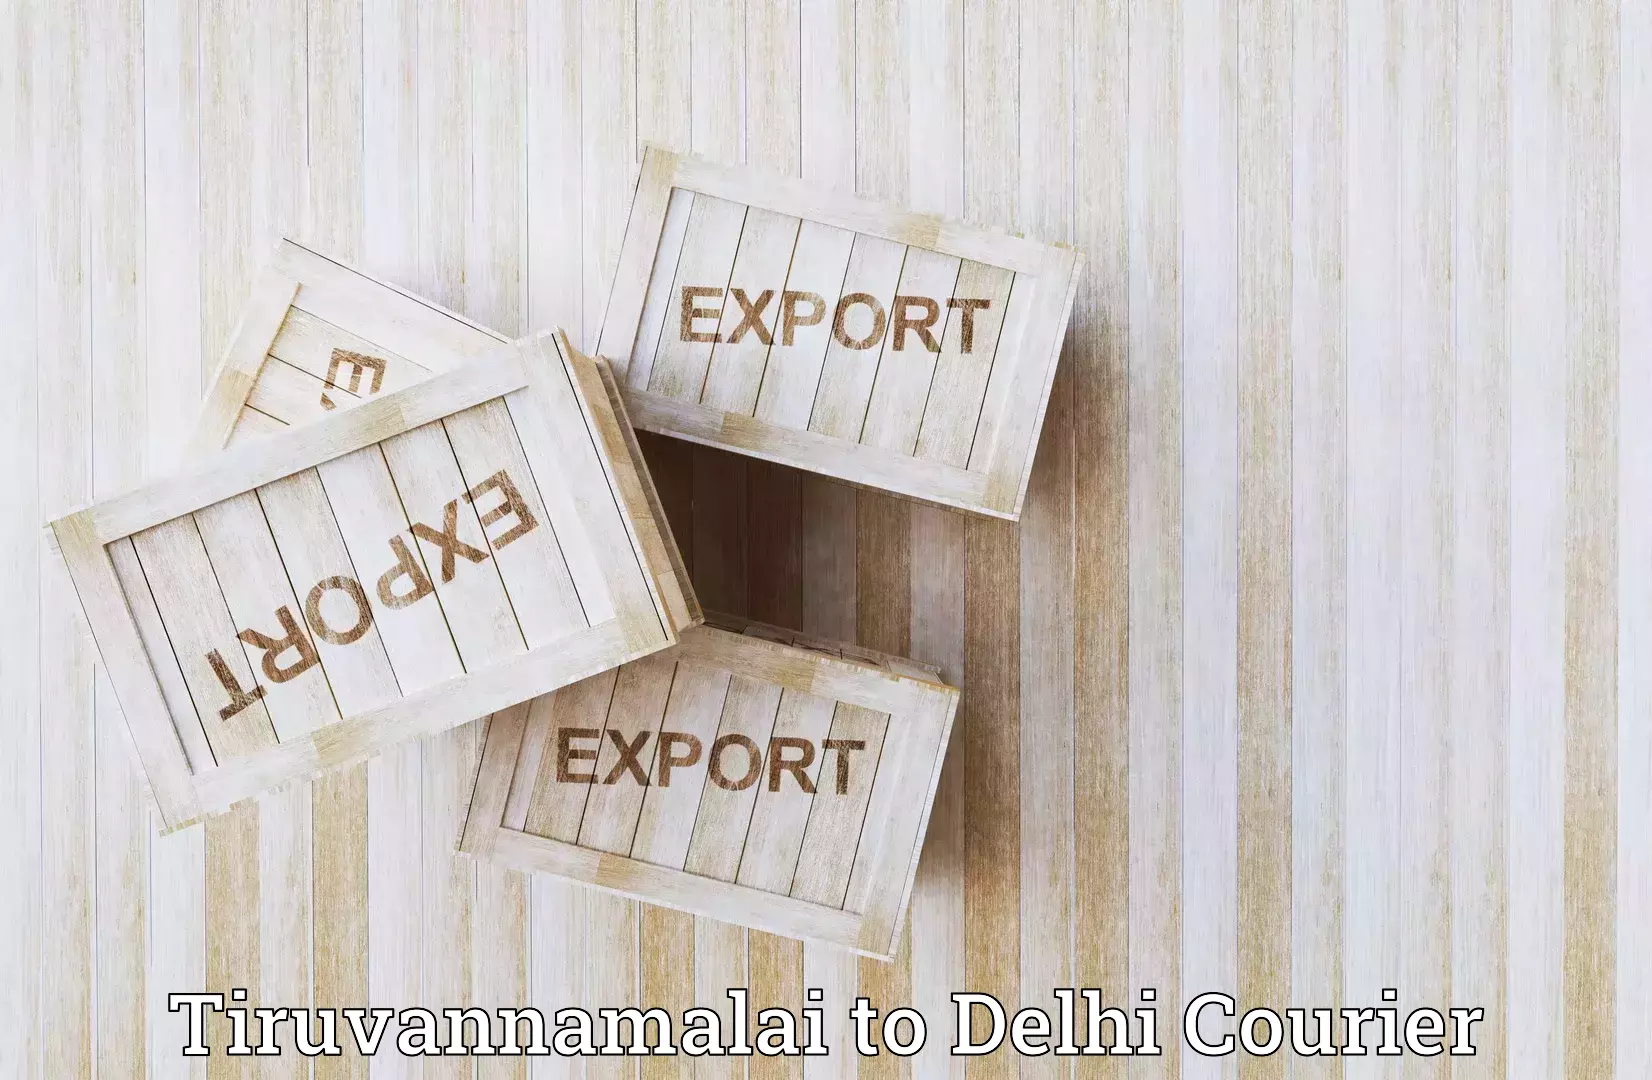 Sustainable shipping practices Tiruvannamalai to IIT Delhi